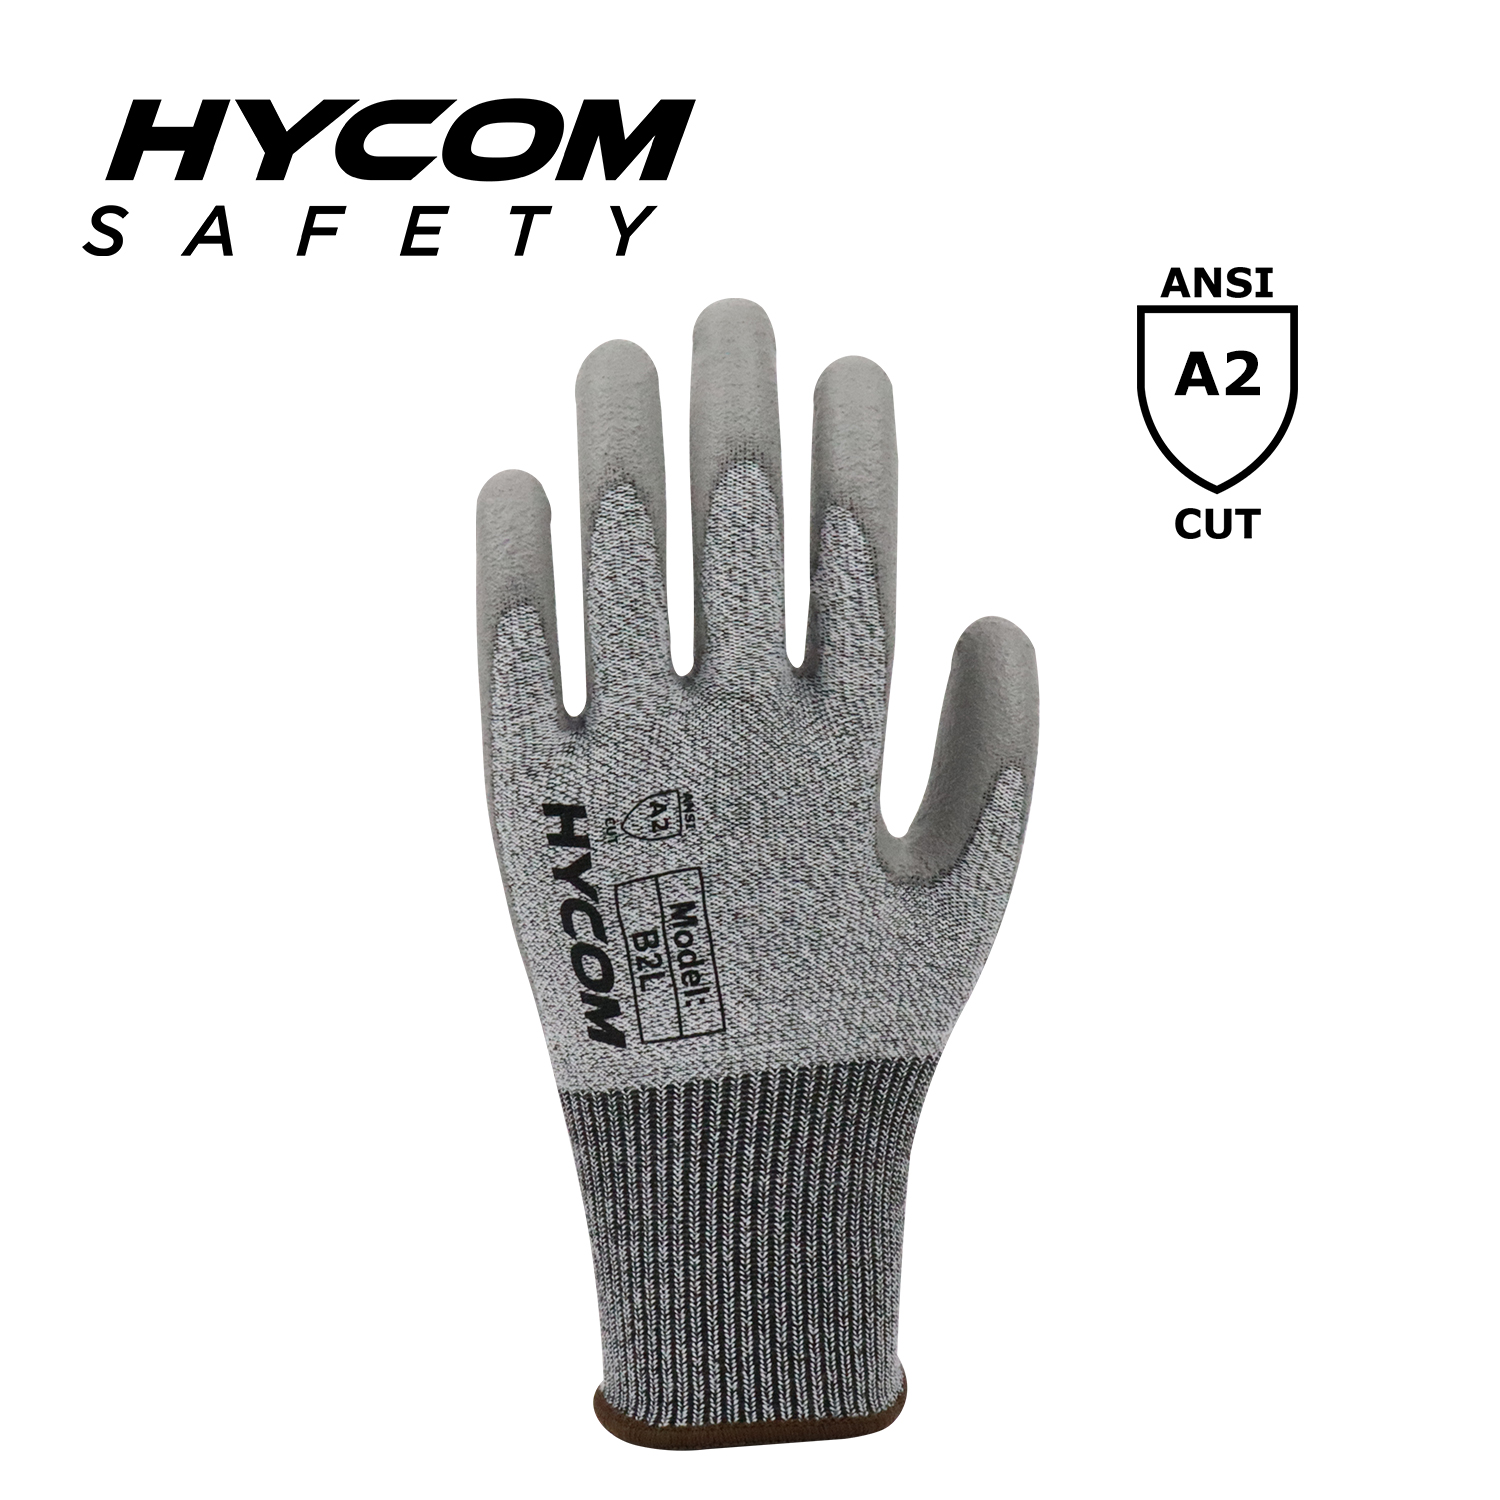 HYCOM Atmungsaktiver, schnittfester 13G ANSI 2-Handschuh mit Polyurethanbeschichtung auf der Innenhand. Weichere PSA-Arbeitshandschuhe